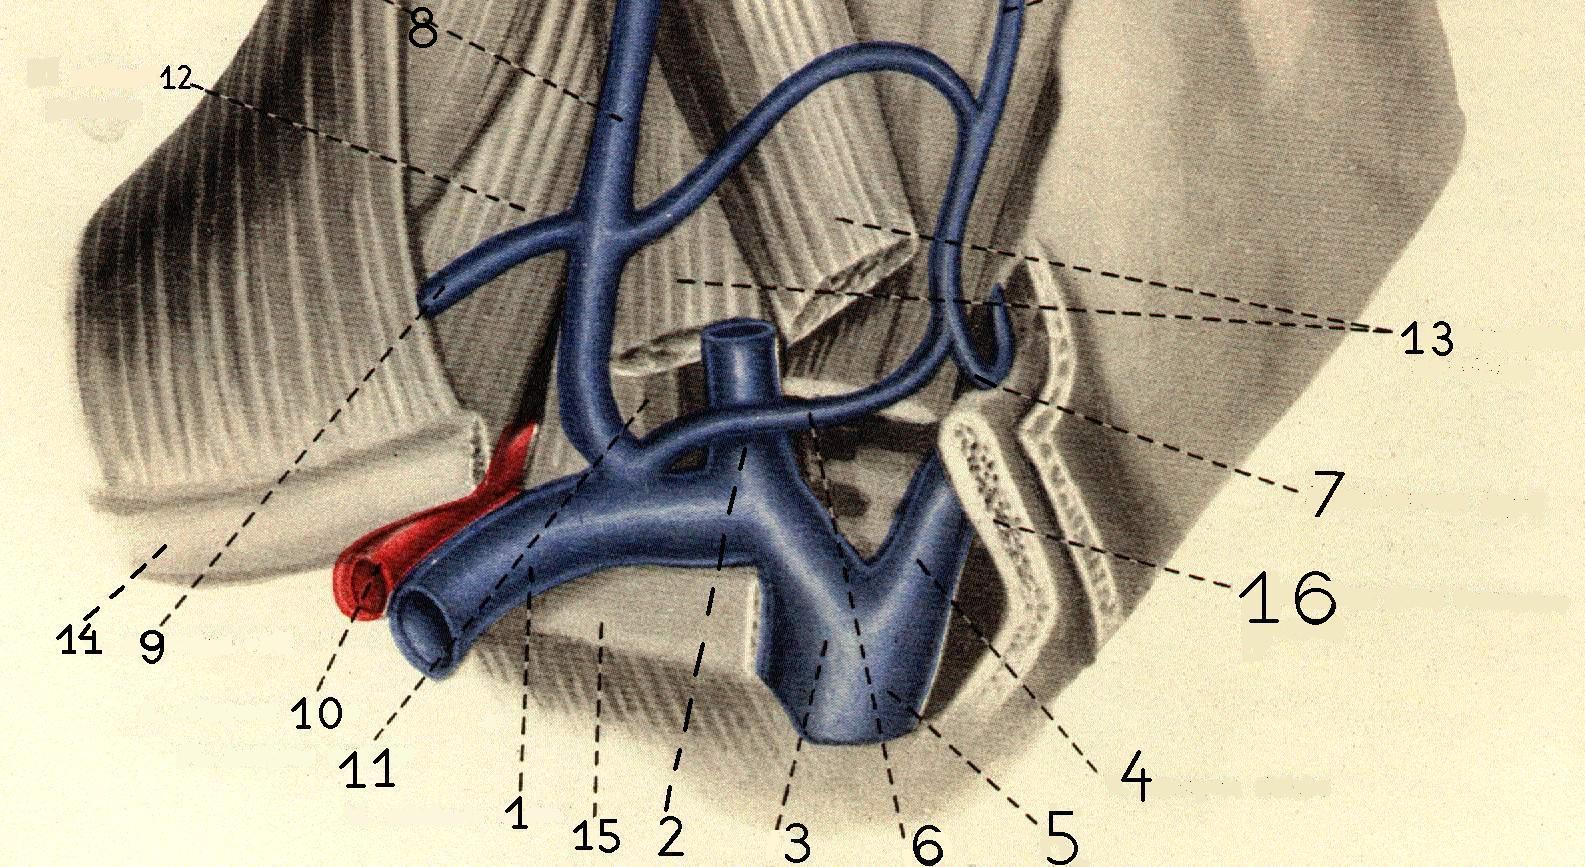 Левая подключичная вена. Подключичная Вена анатомия. Подключичная Вена топография. Подключичная артерия и Вена. Анатомия подключичной вены слева.